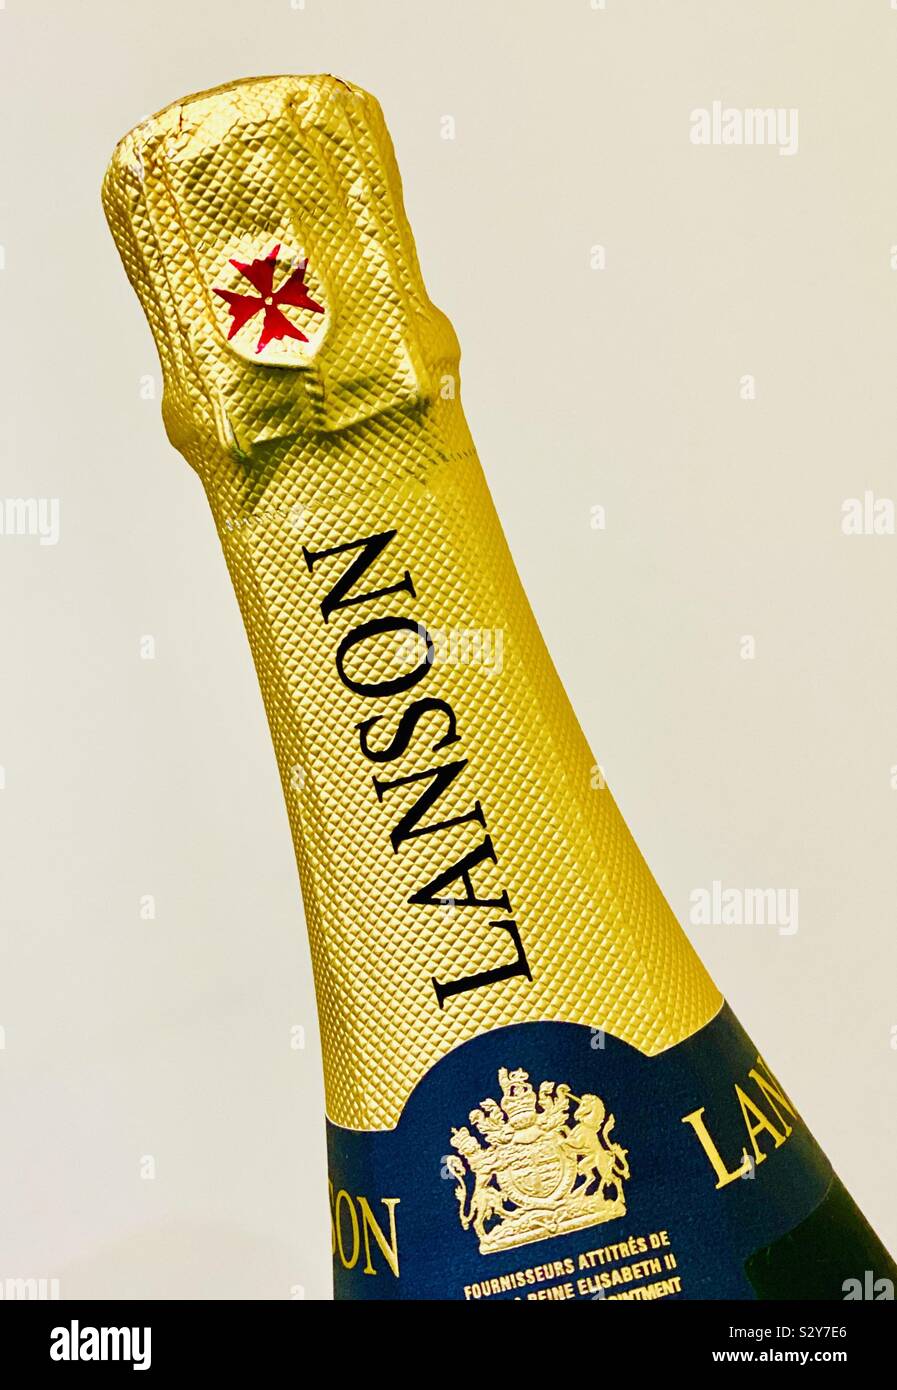 Flacone chiuso di Lanson champagne Foto Stock